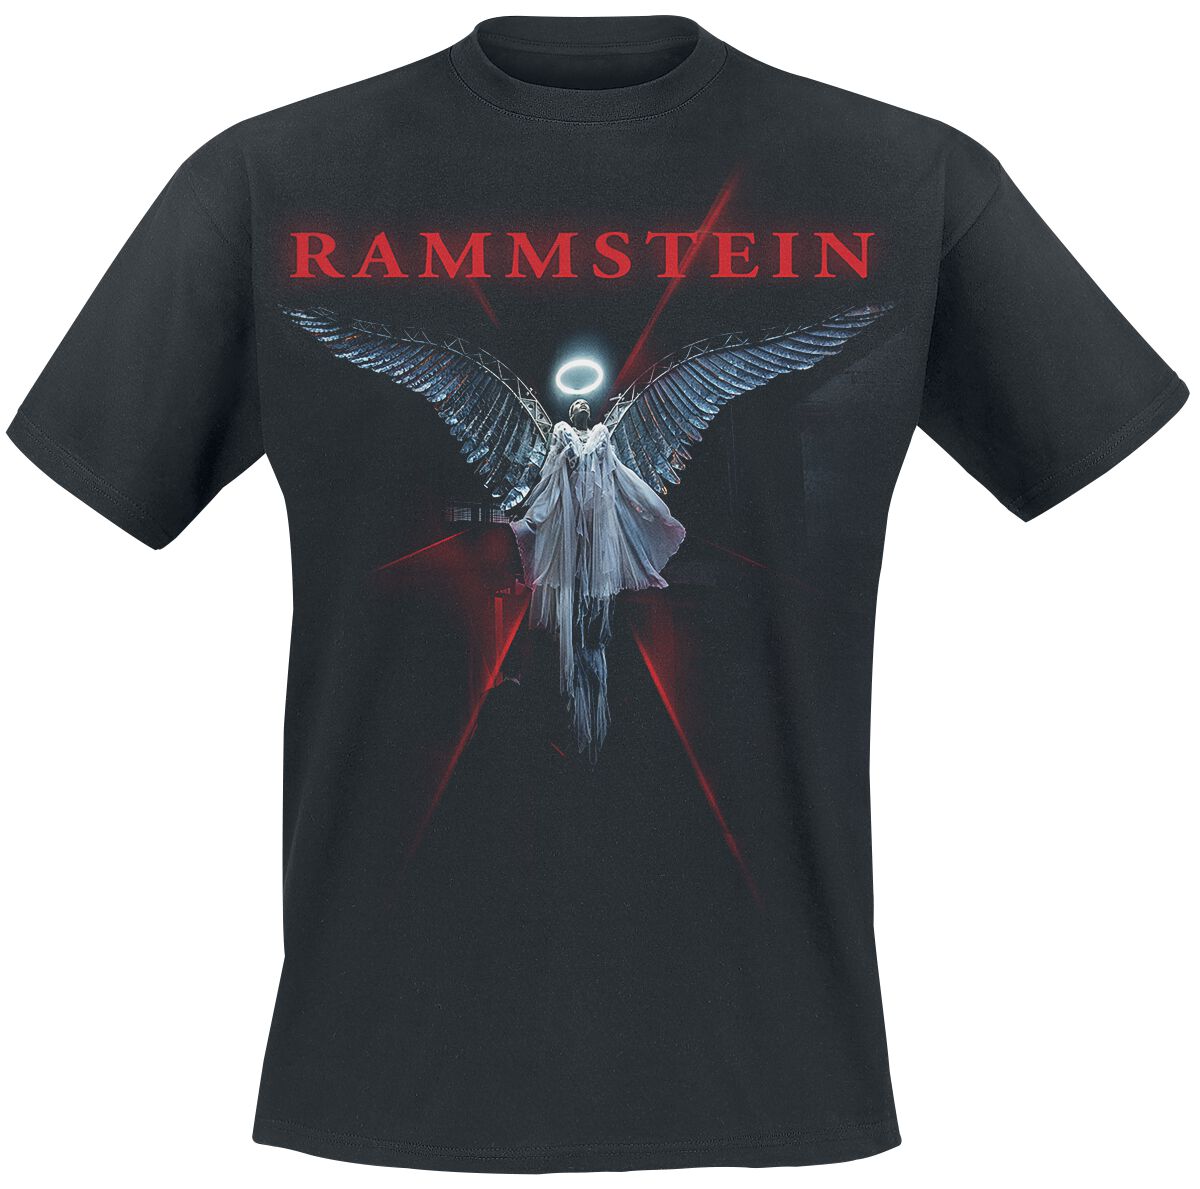 Rammstein T-Shirt - Du-Ich-Wir-Ihr - S bis 5XL - für Männer - Größe XL - schwarz  - Lizenziertes Merchandise!